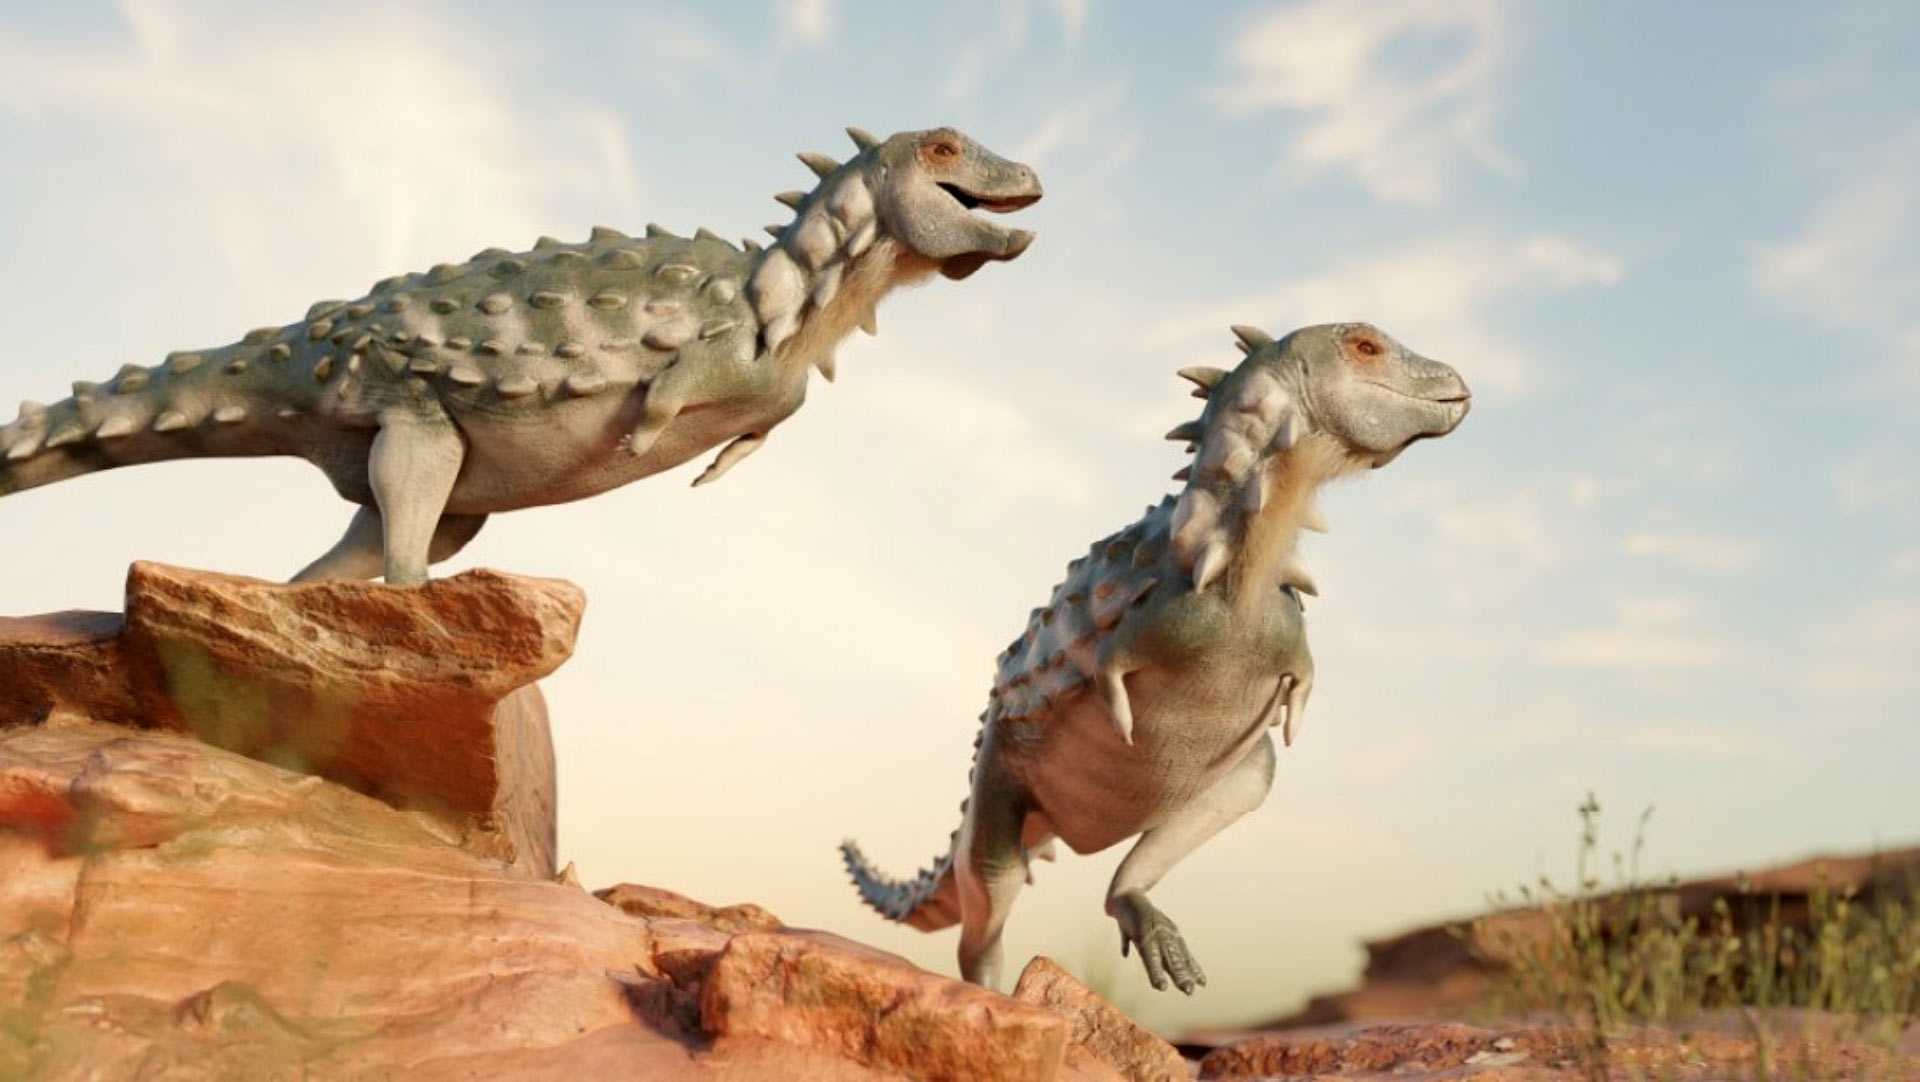 В Аргентине открыли новый вид динозавра, похожего на дракона